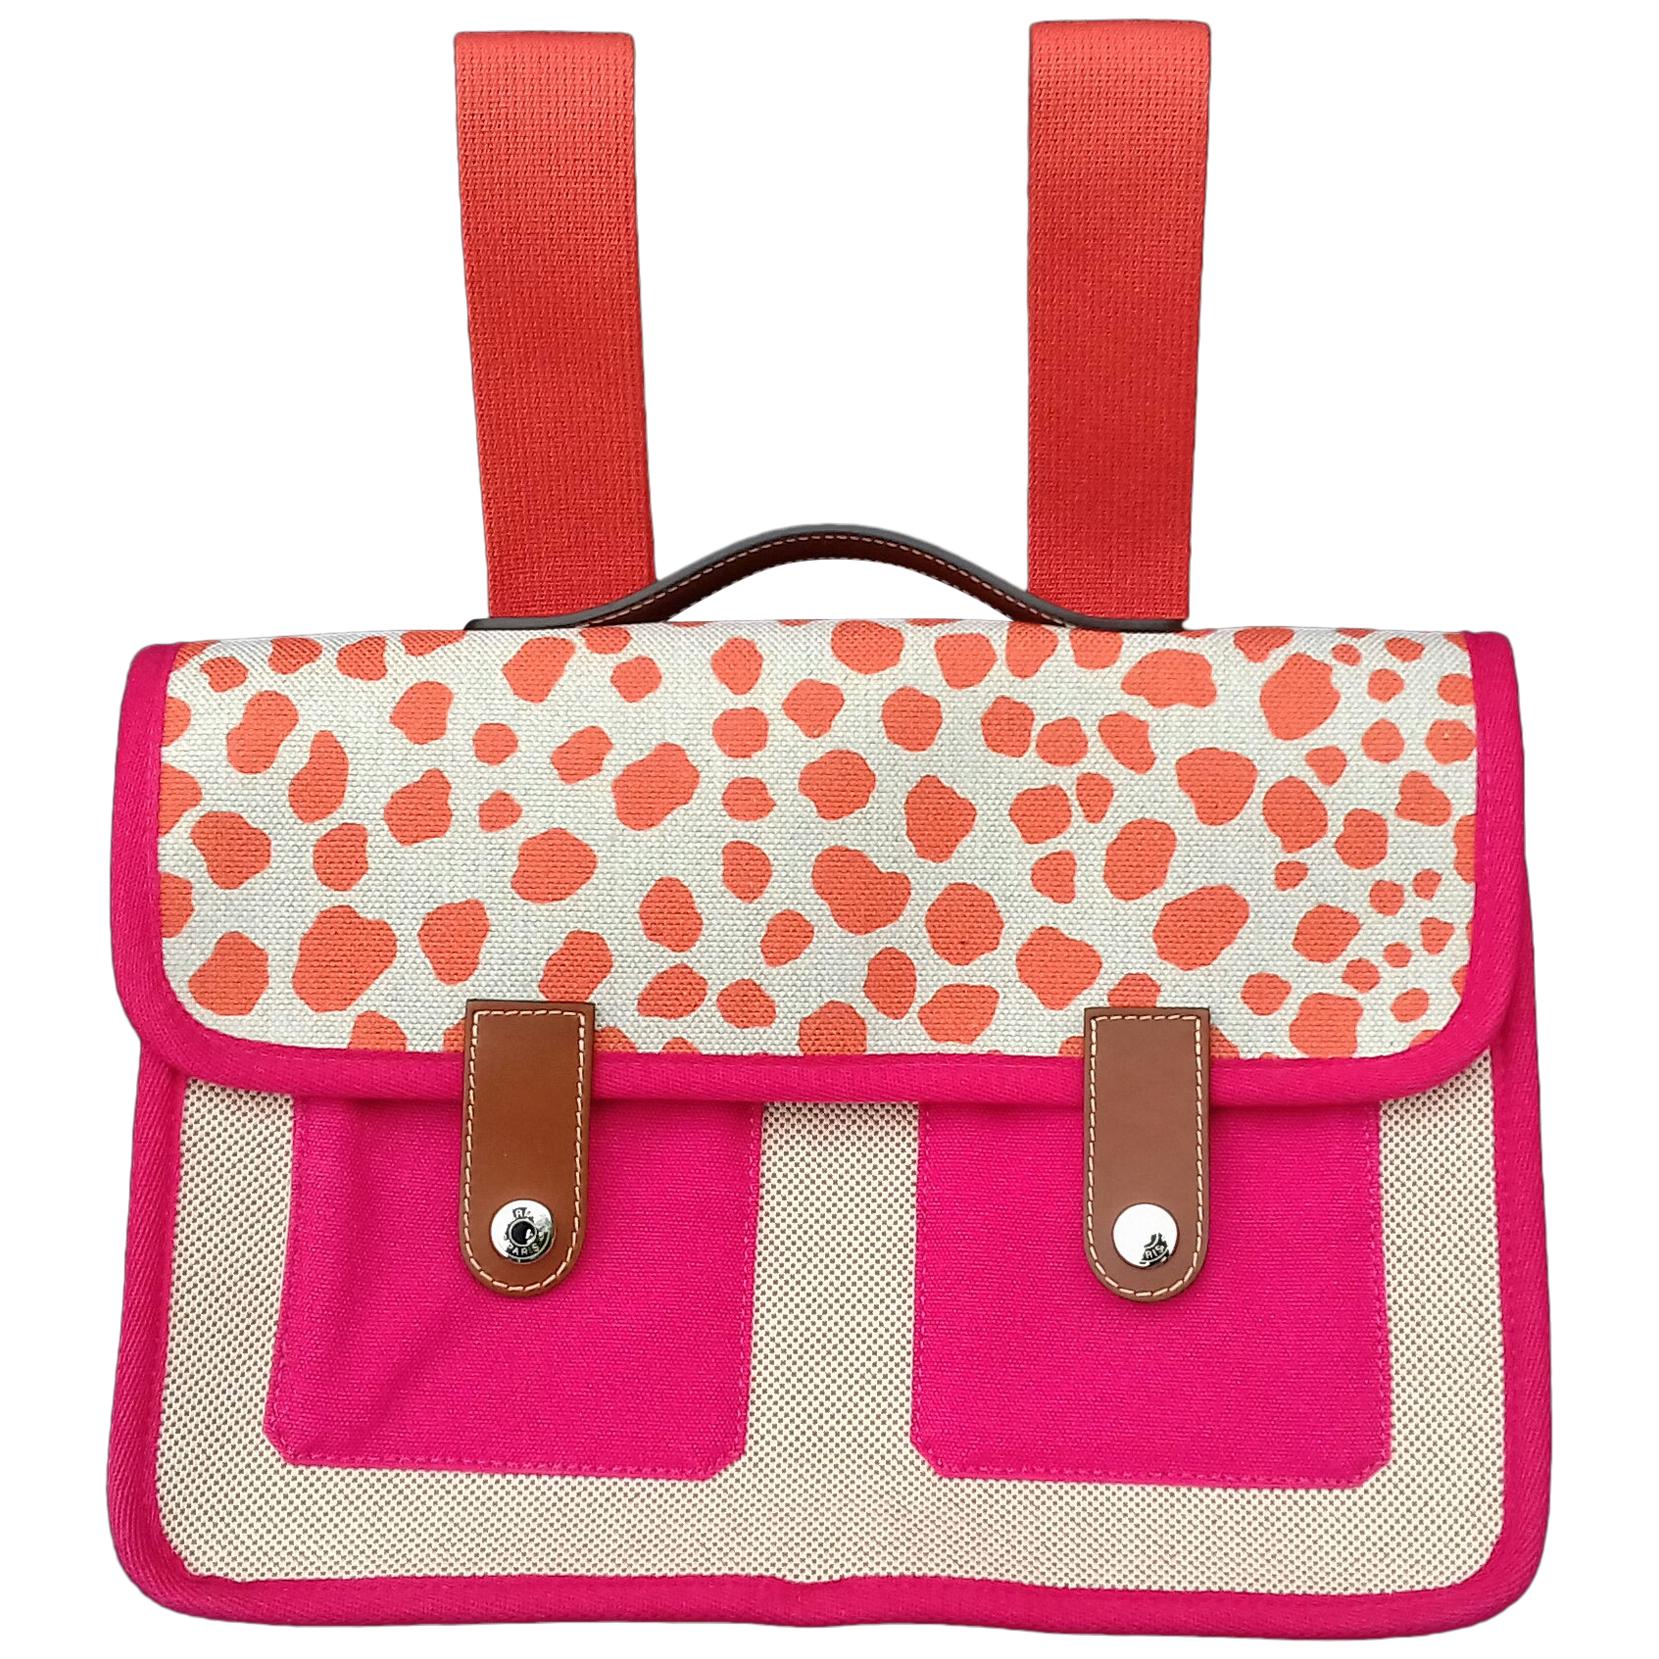 Hermès School Bag Cartable Toile Jeux dans la Jungle Pink Tangerine 3 ways 